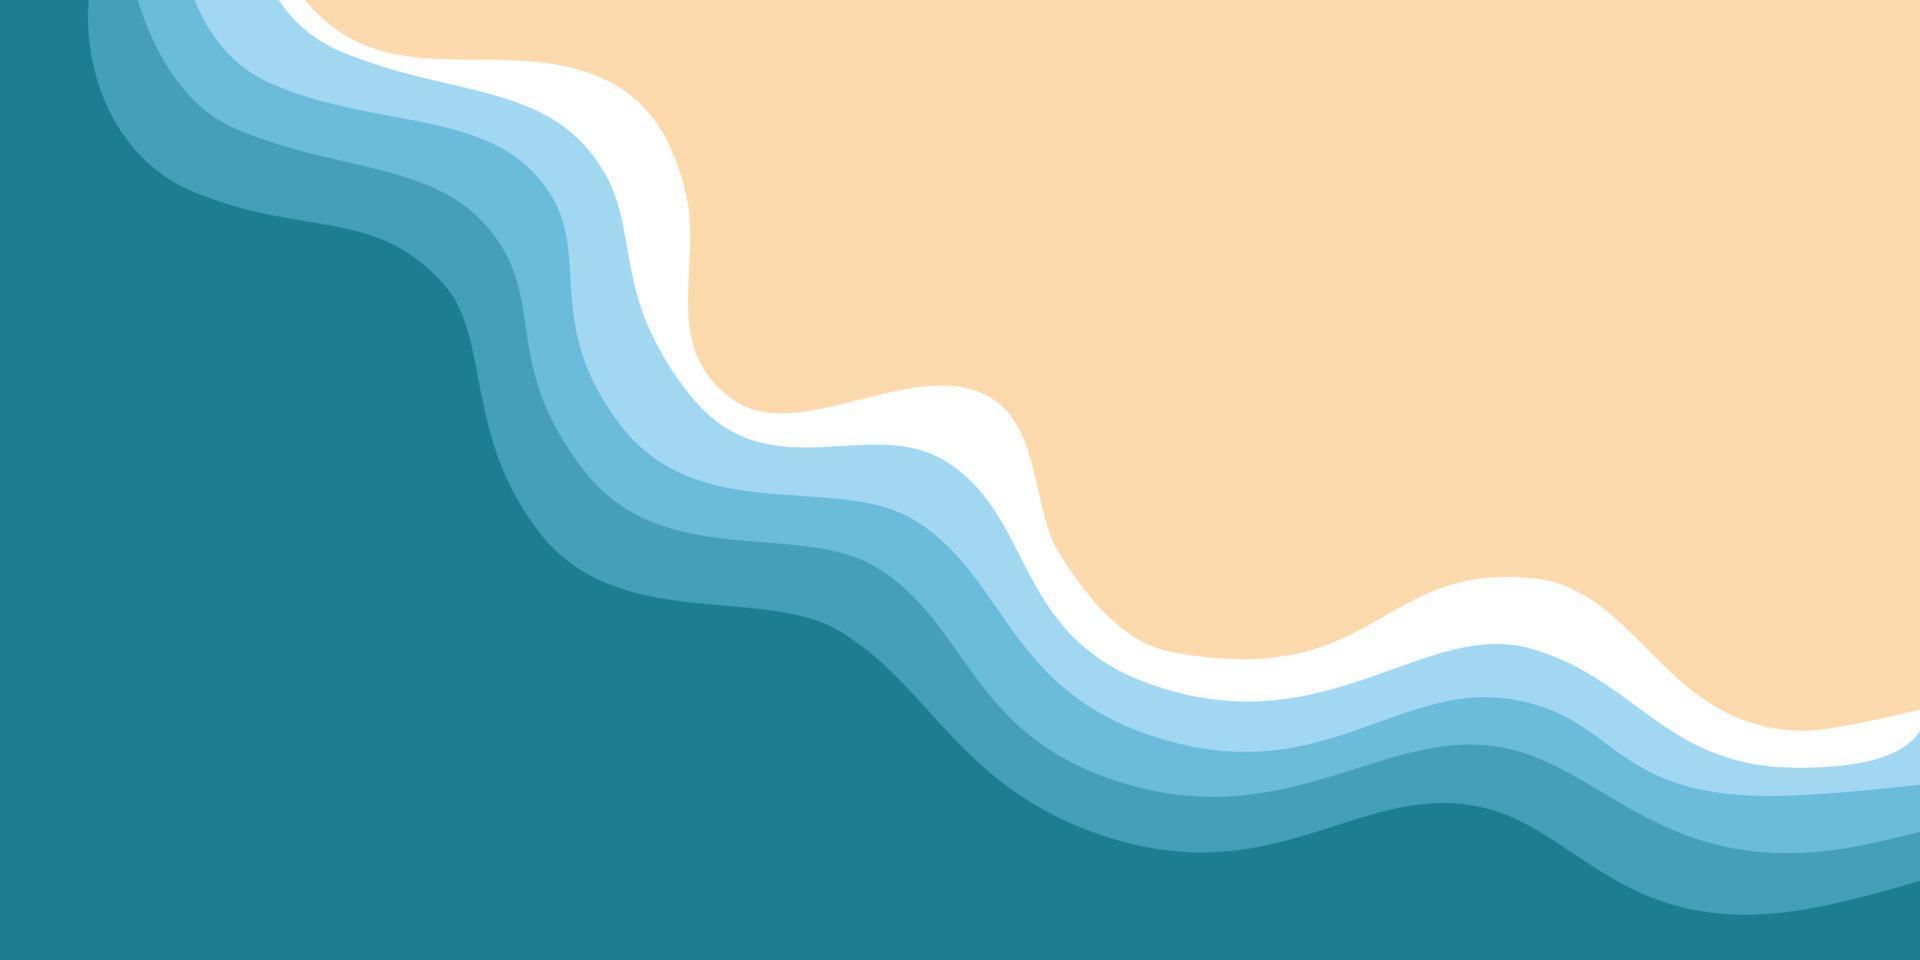 abstracte achtergrond van blauwe zee en zomerstrand voor spandoek, uitnodiging, poster of websiteontwerp. vector